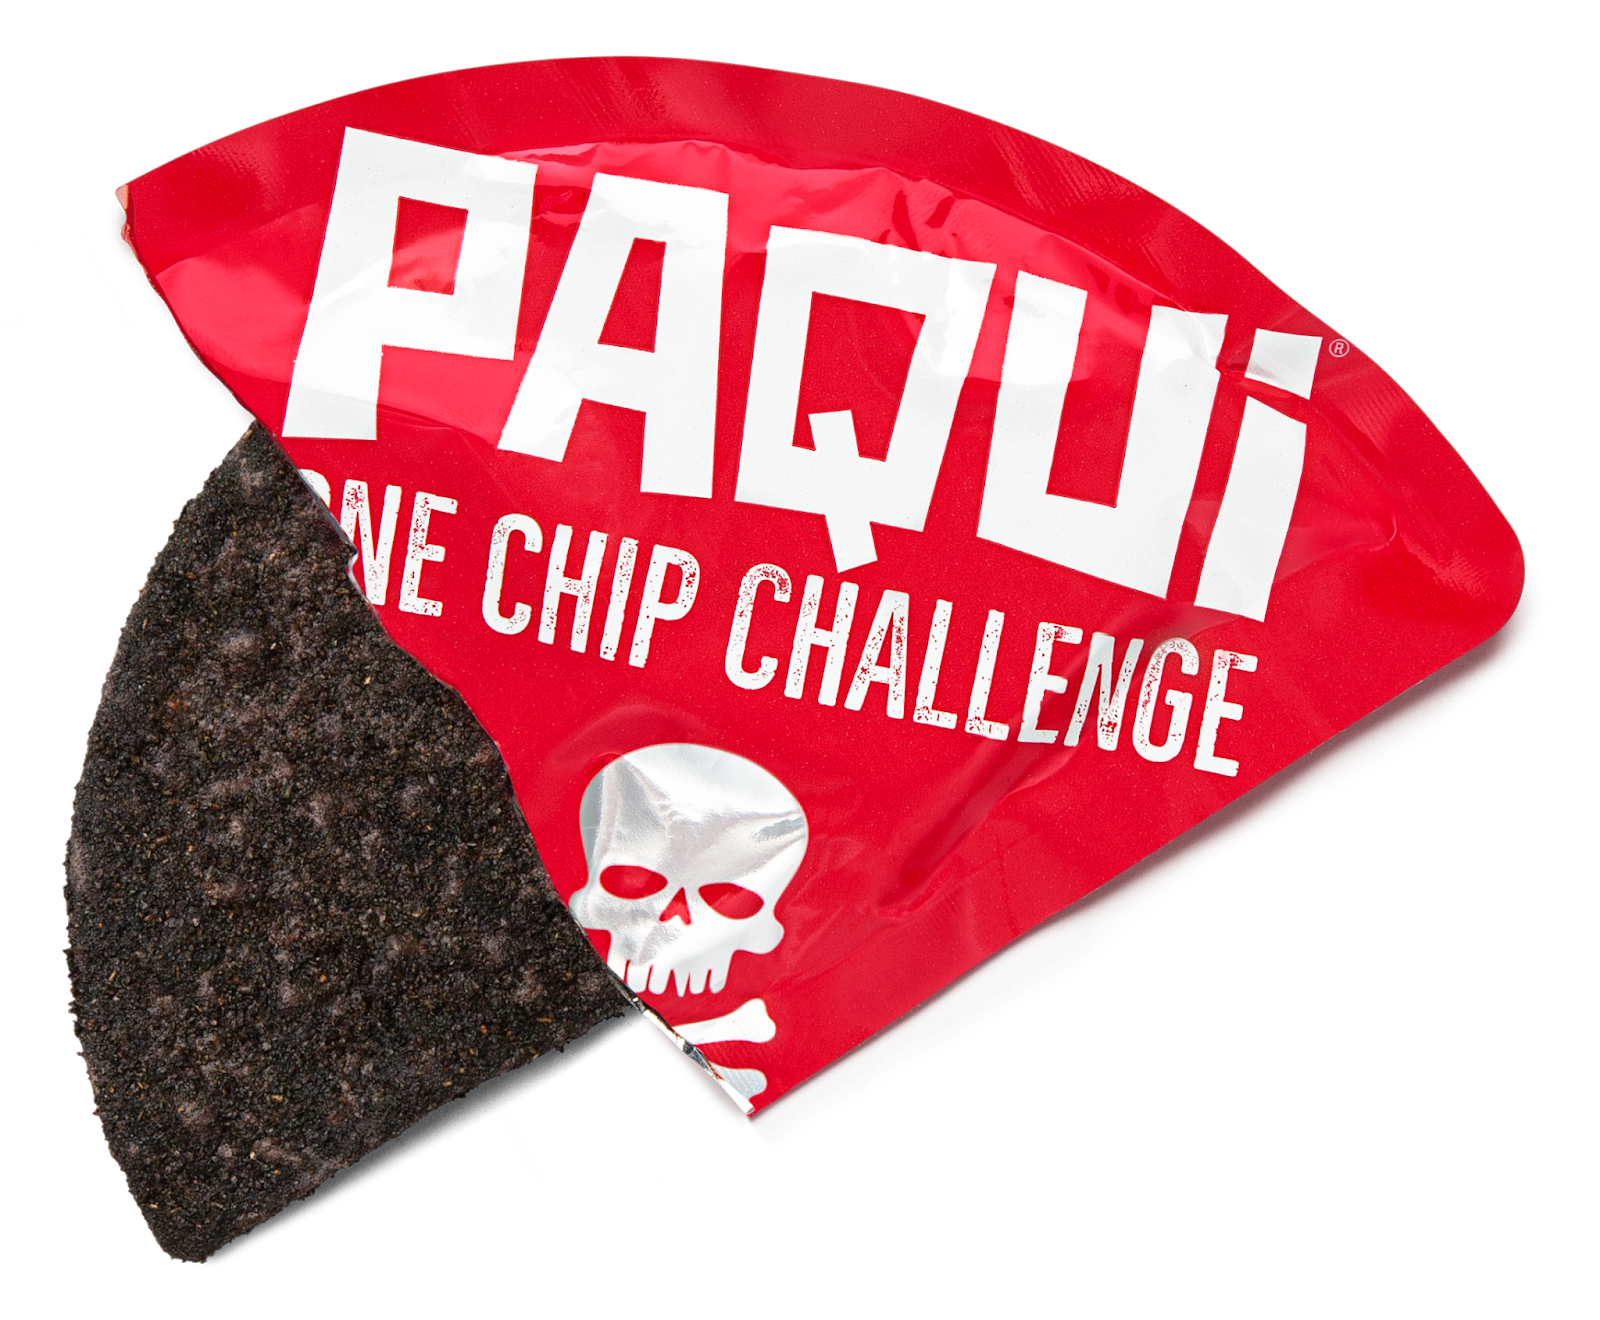 One Chip Challenge Death Ingredients